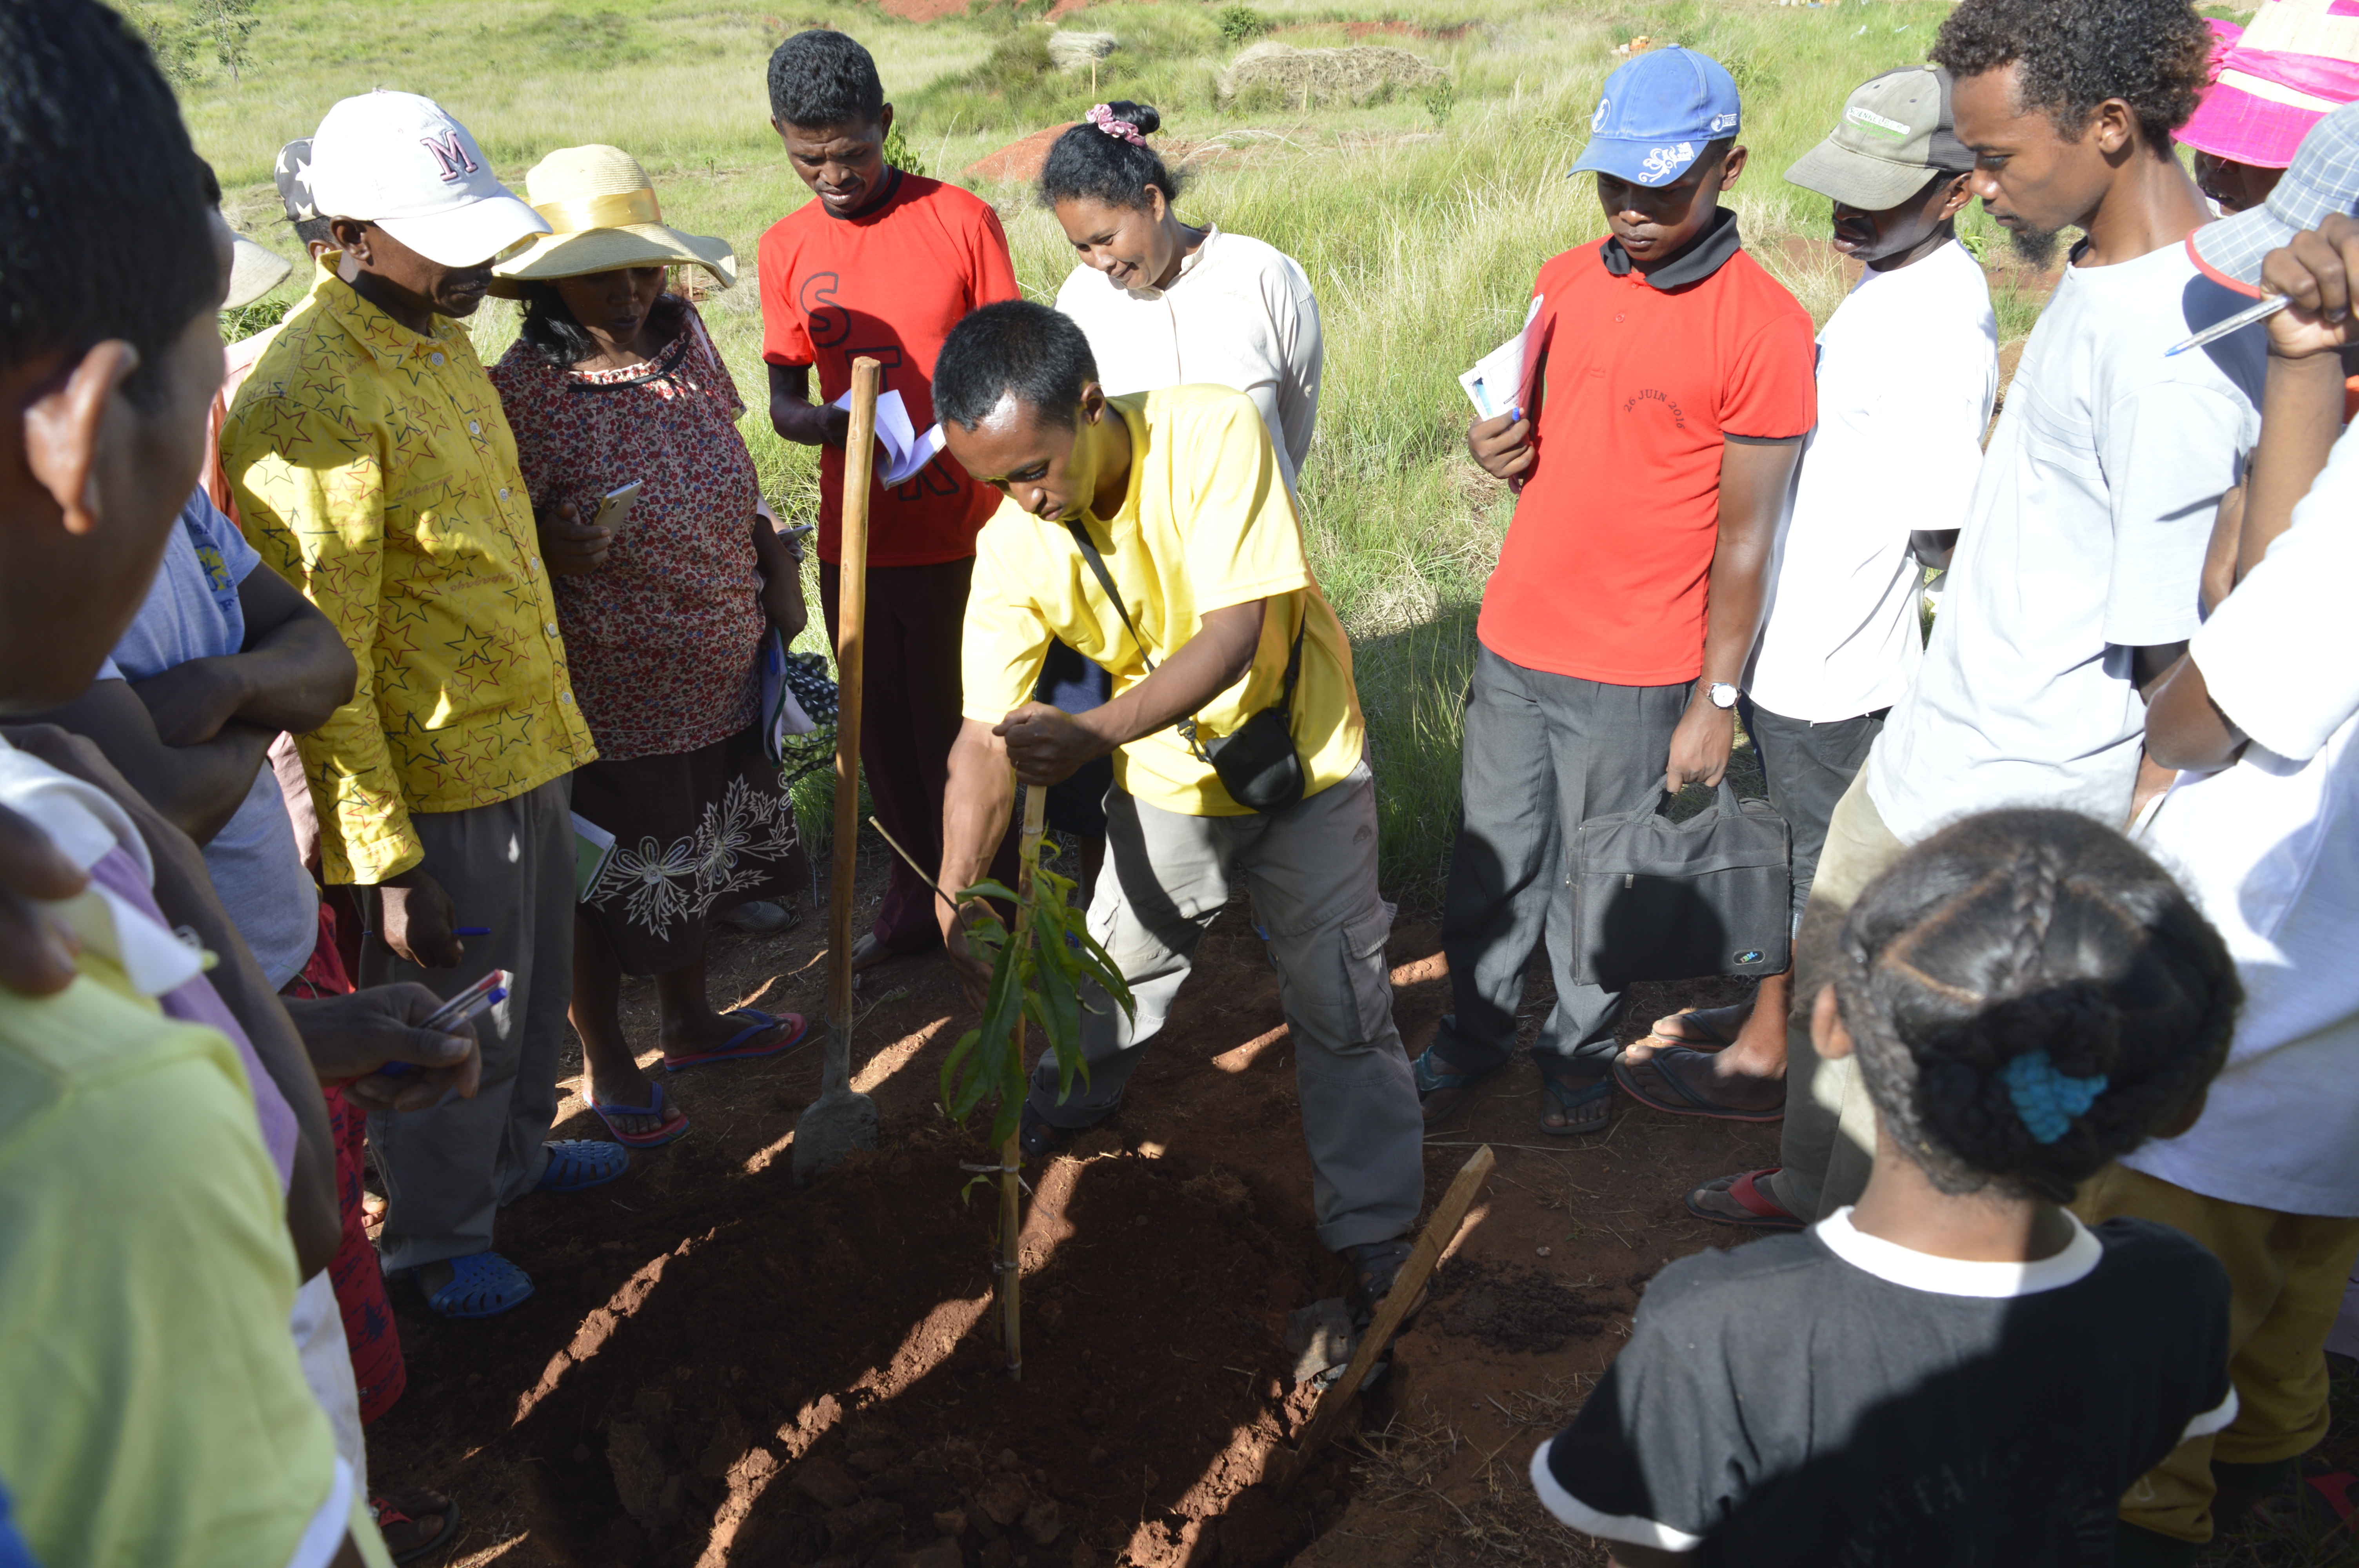 Tree planting demonstration at Mahatsinjo. Caption: Germain Andrianaivoson demonstrating how to plant a fruit tree to lay FJKM visitors at the Mahatsinjo fruit center